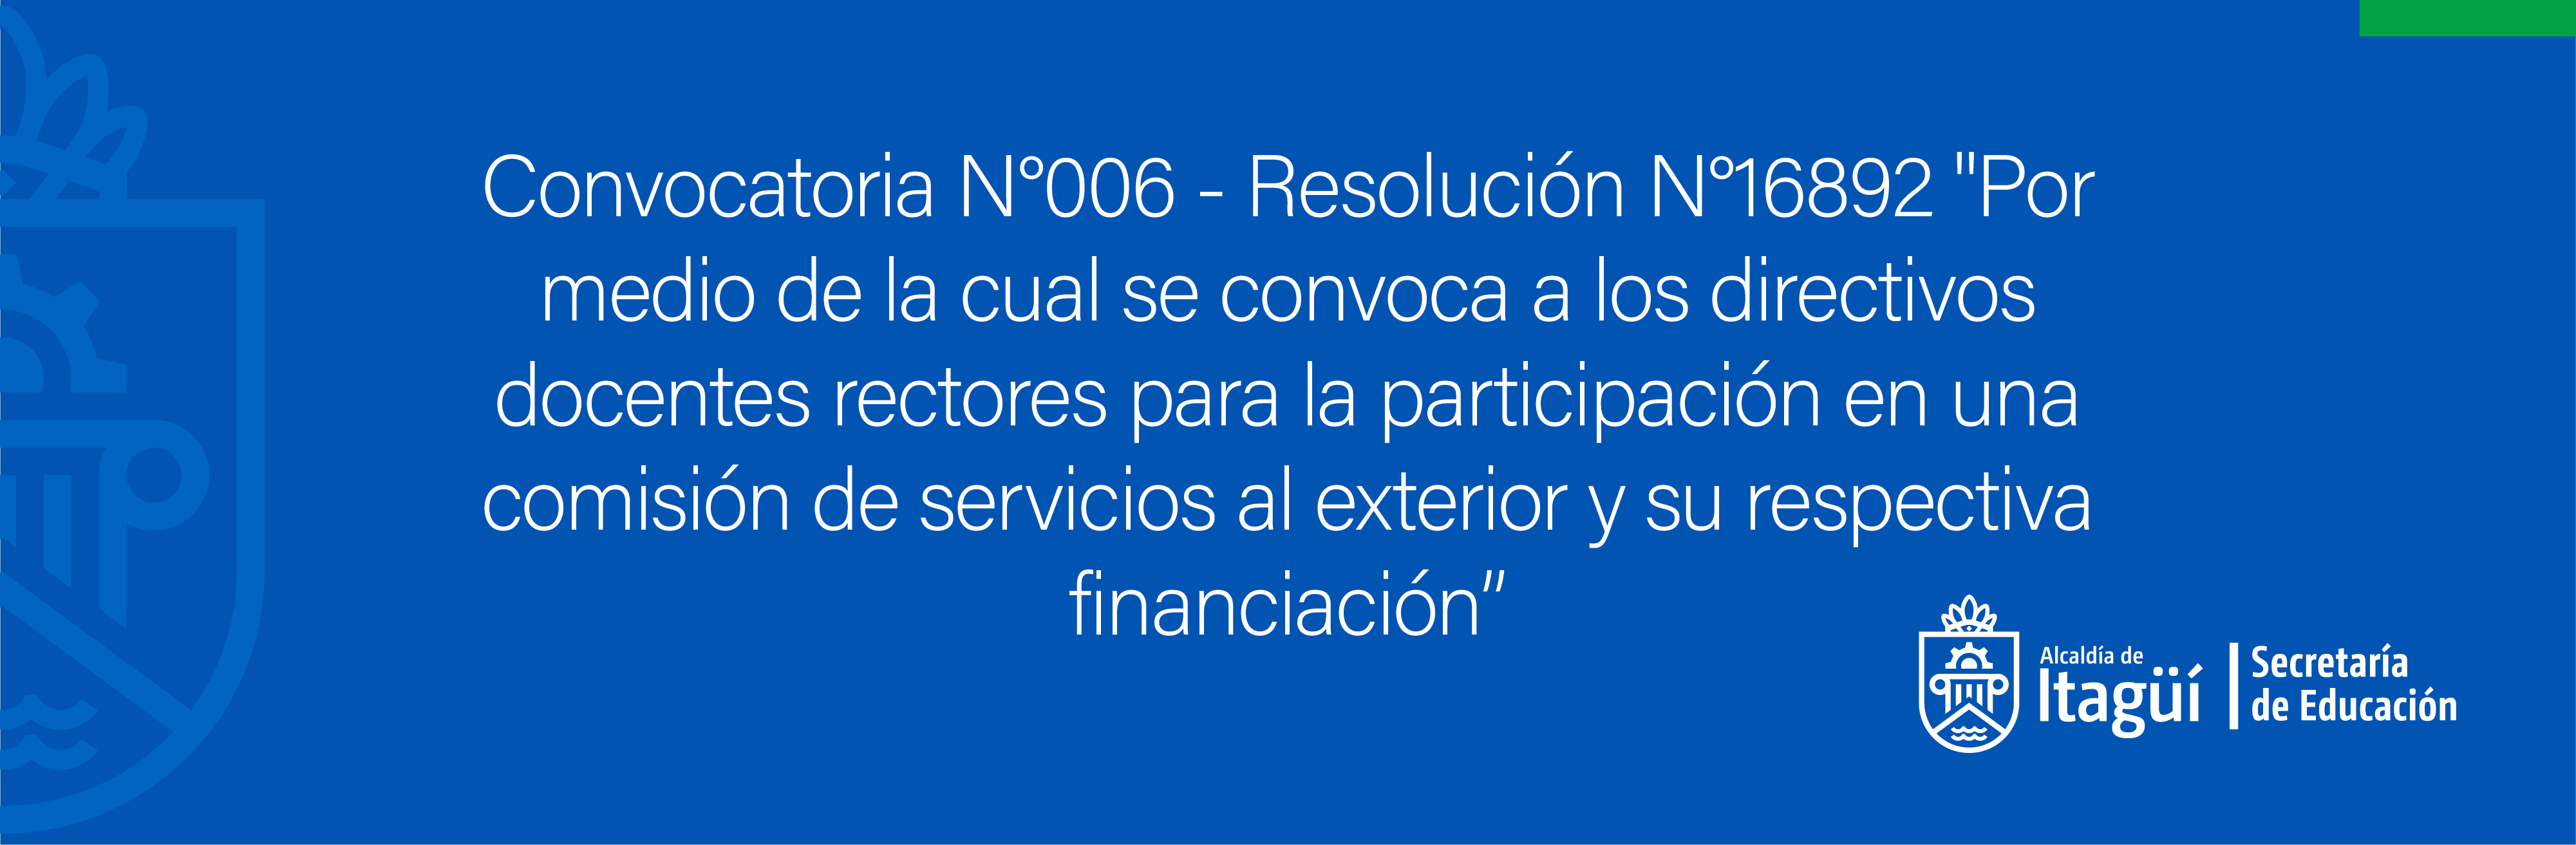 Convocatoria No. 006 - Resolución No. 16892 - Por medio de la cual se convoca a los directivos docentes rectores para la participación en una comisión de servicios al exterior y su respectiva financiación